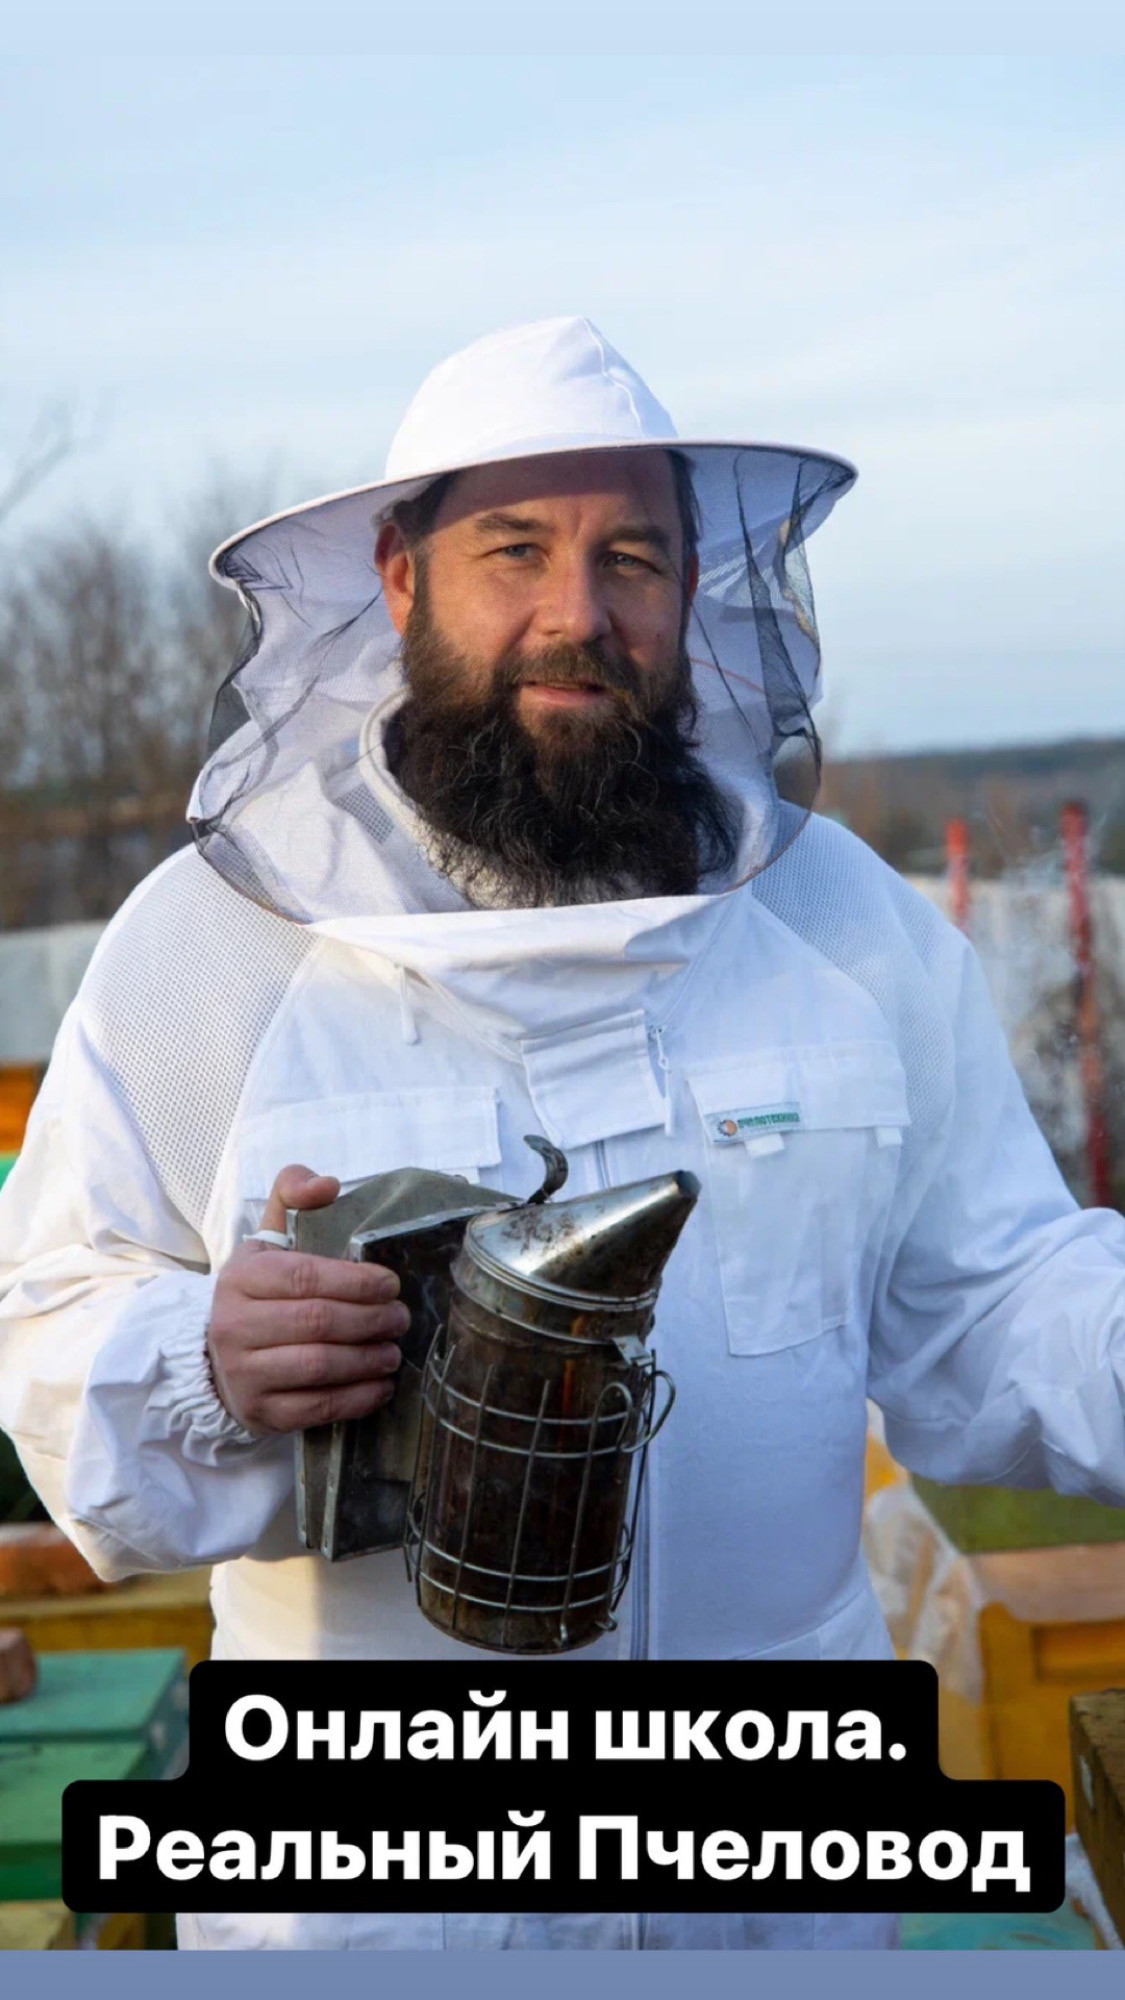 Что нужно делать, что бы спасти пчёл? Сохранить знания пчеловождения 